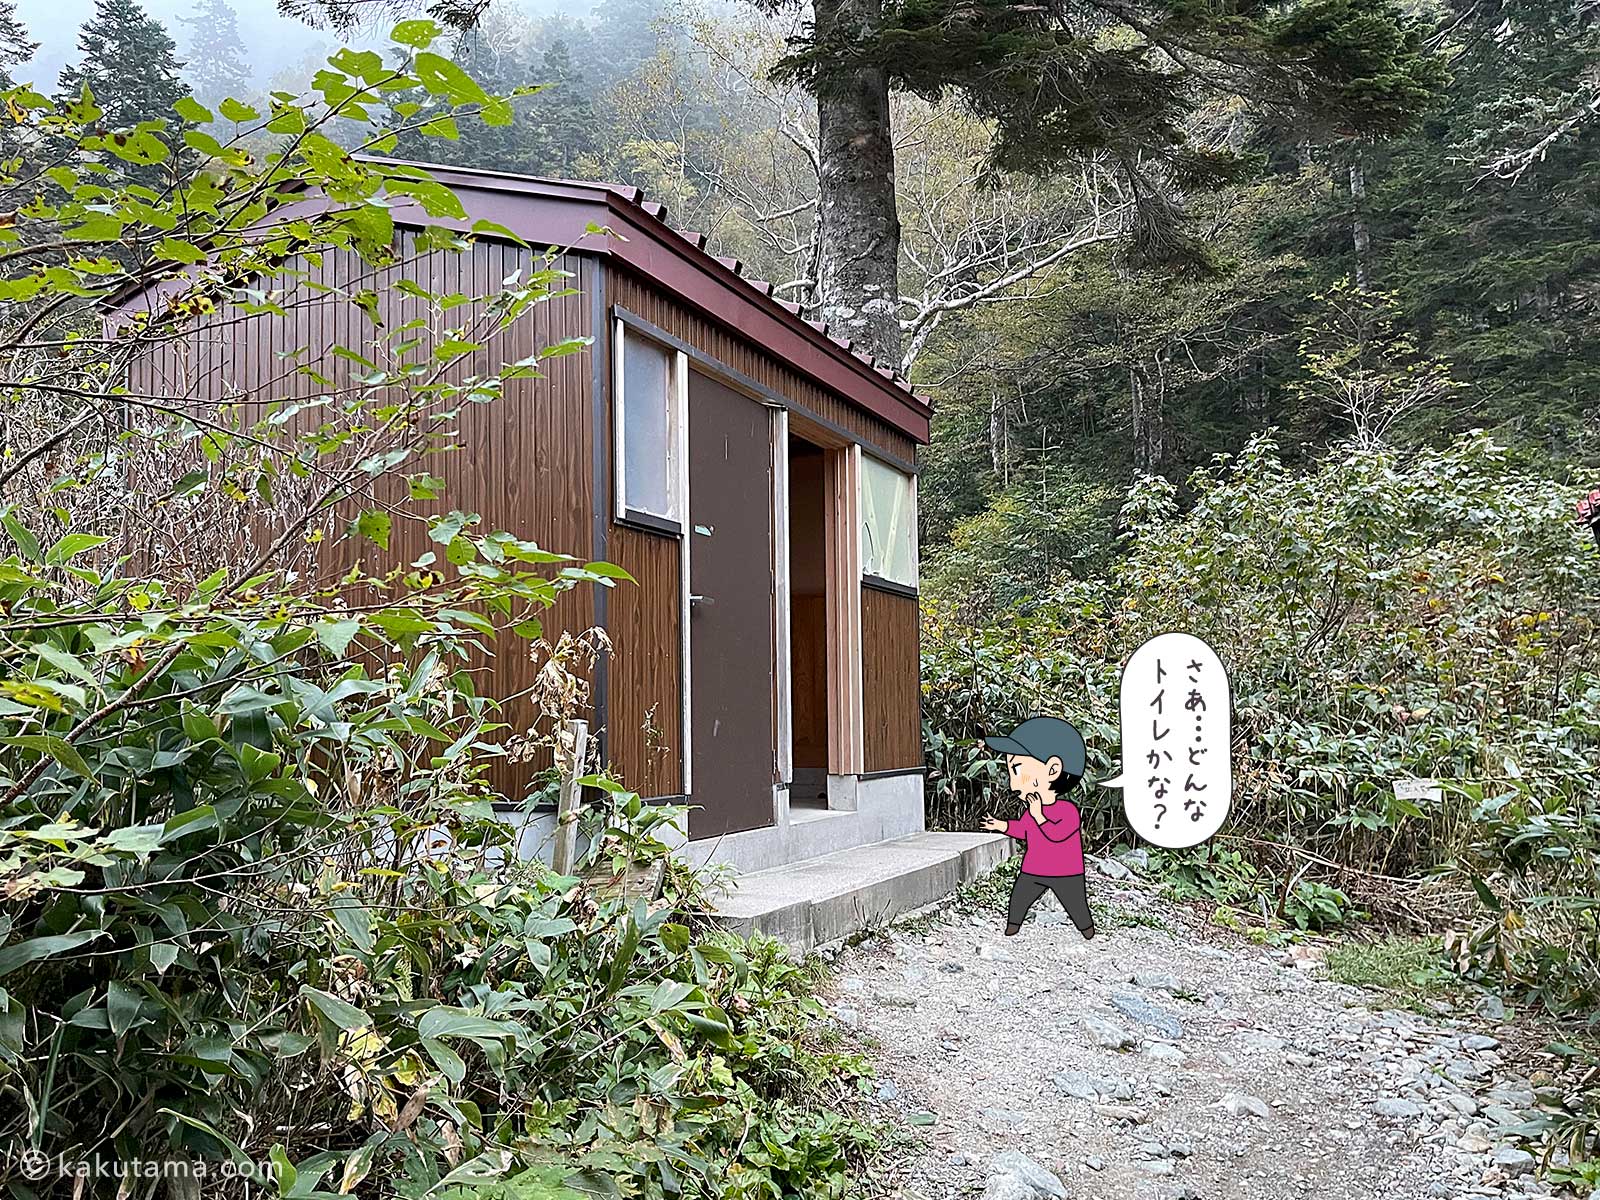 槍平小屋の外トイレの写真と登山者のイラスト